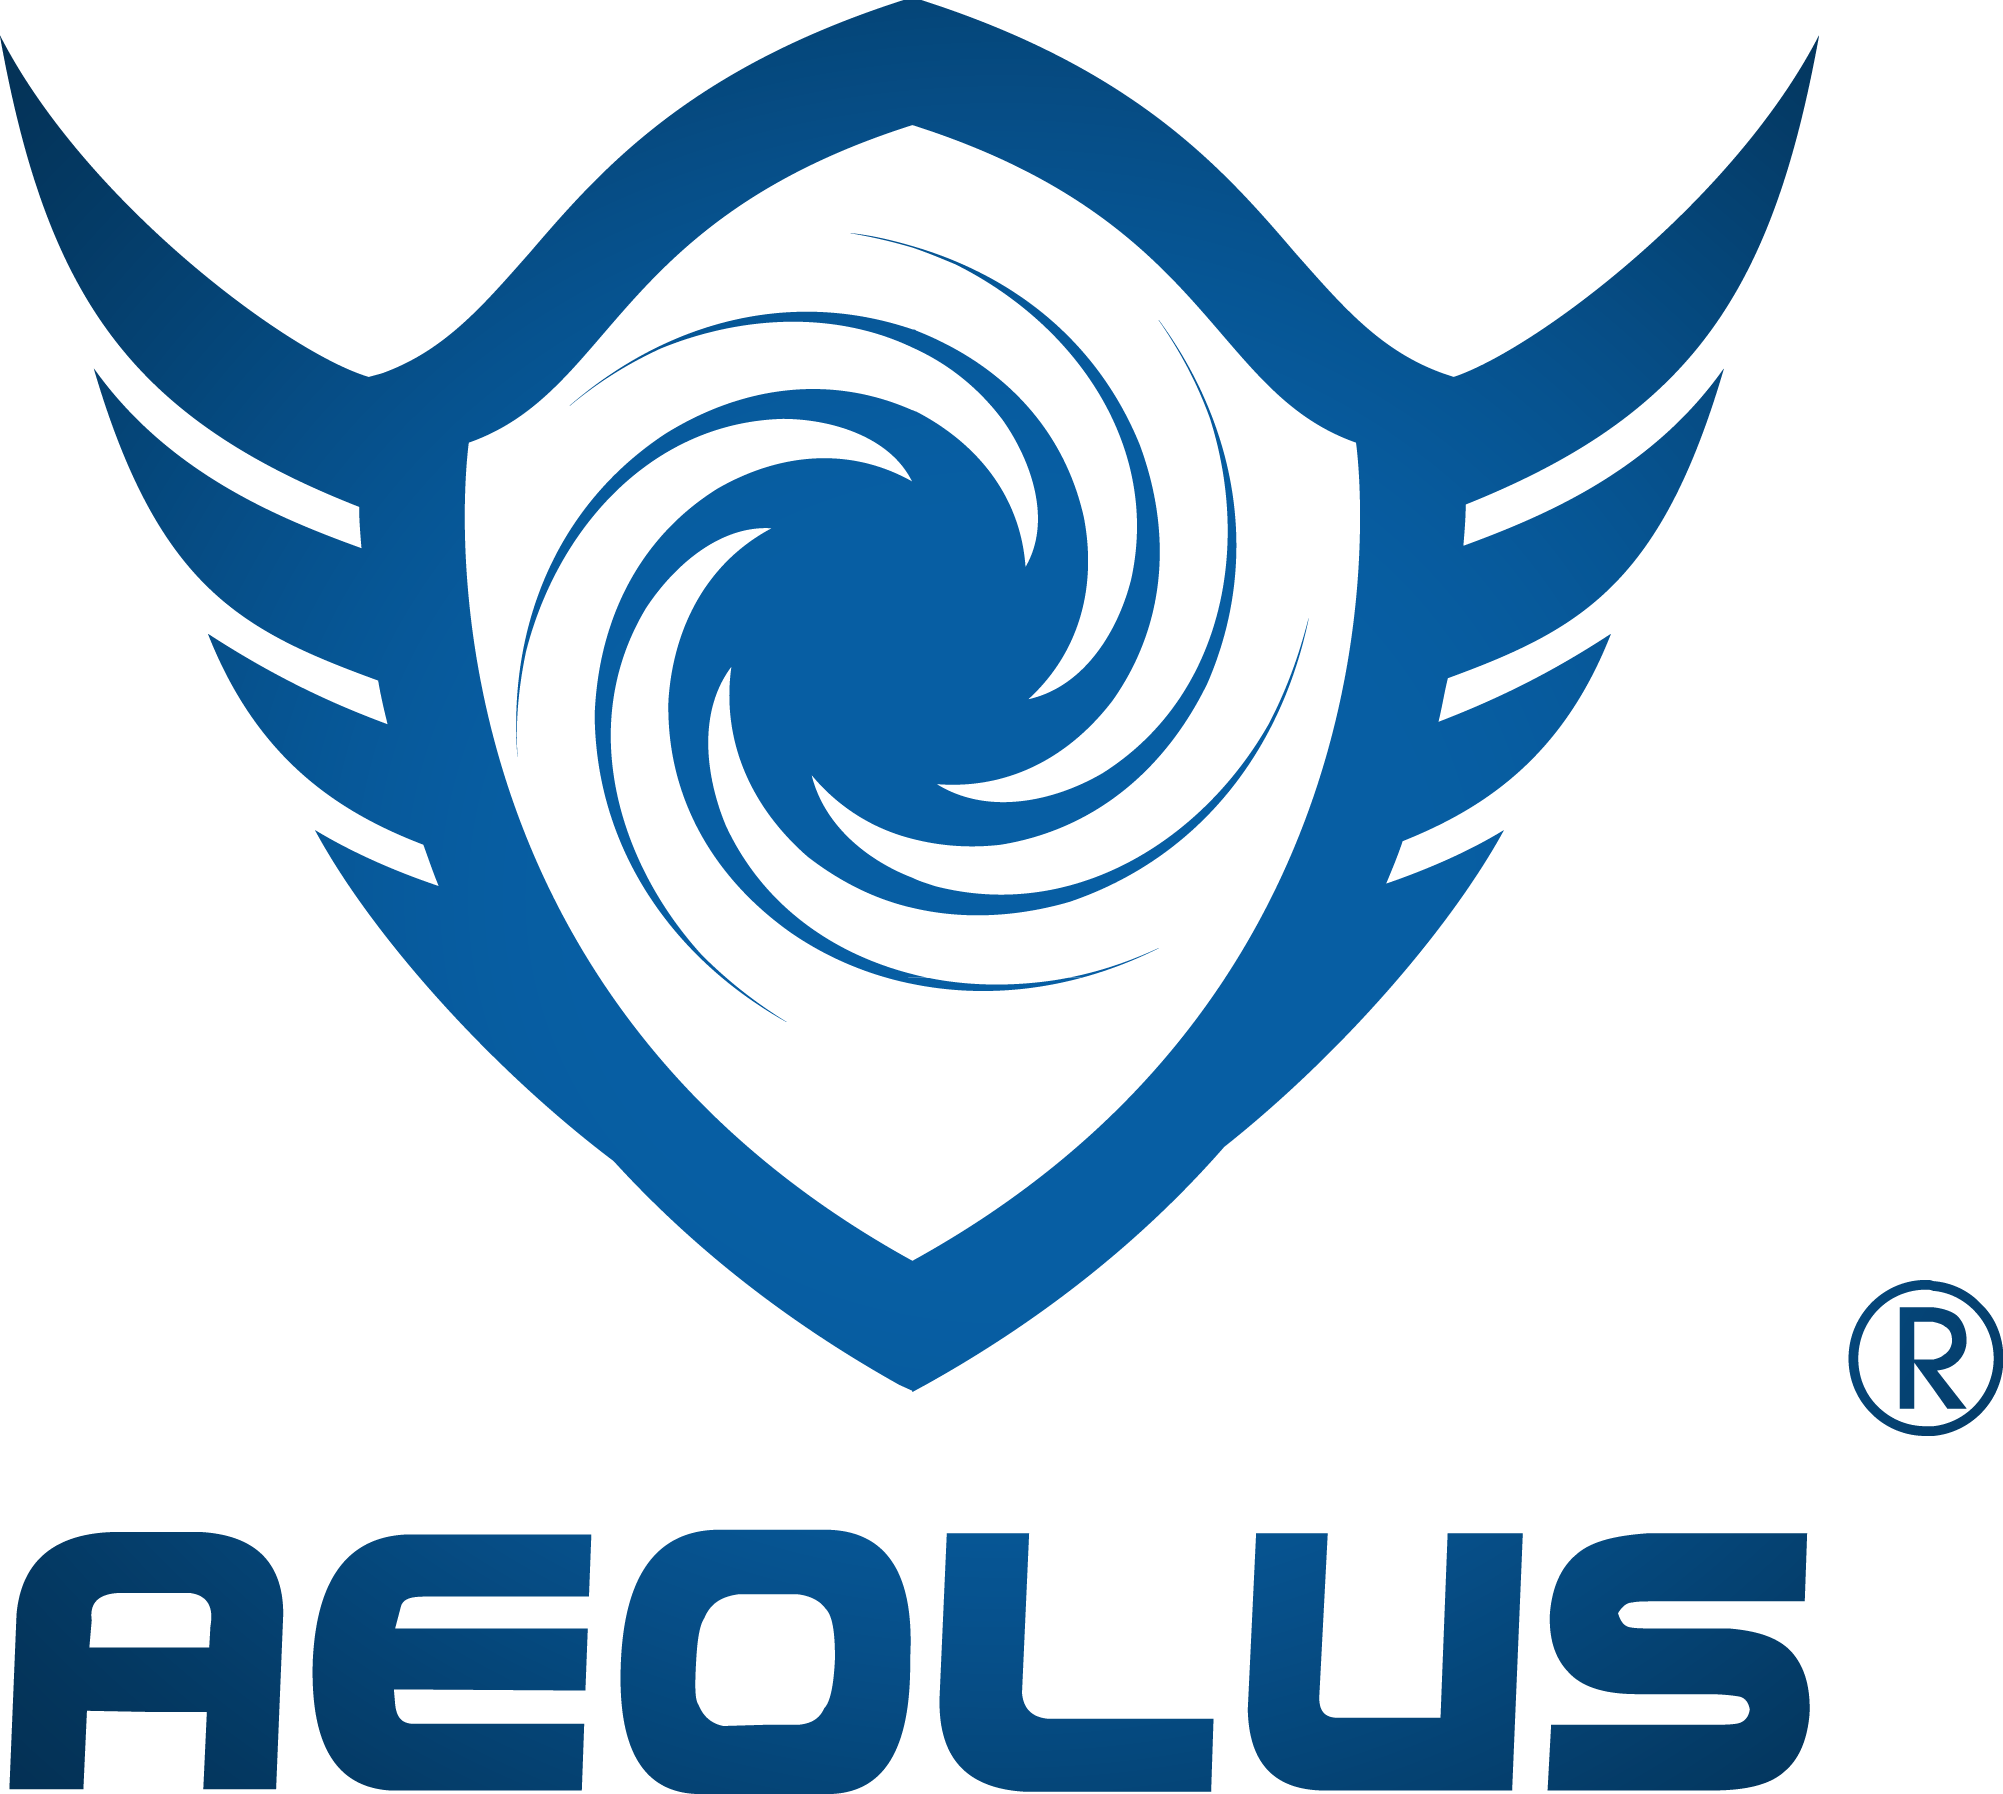 Aeolus